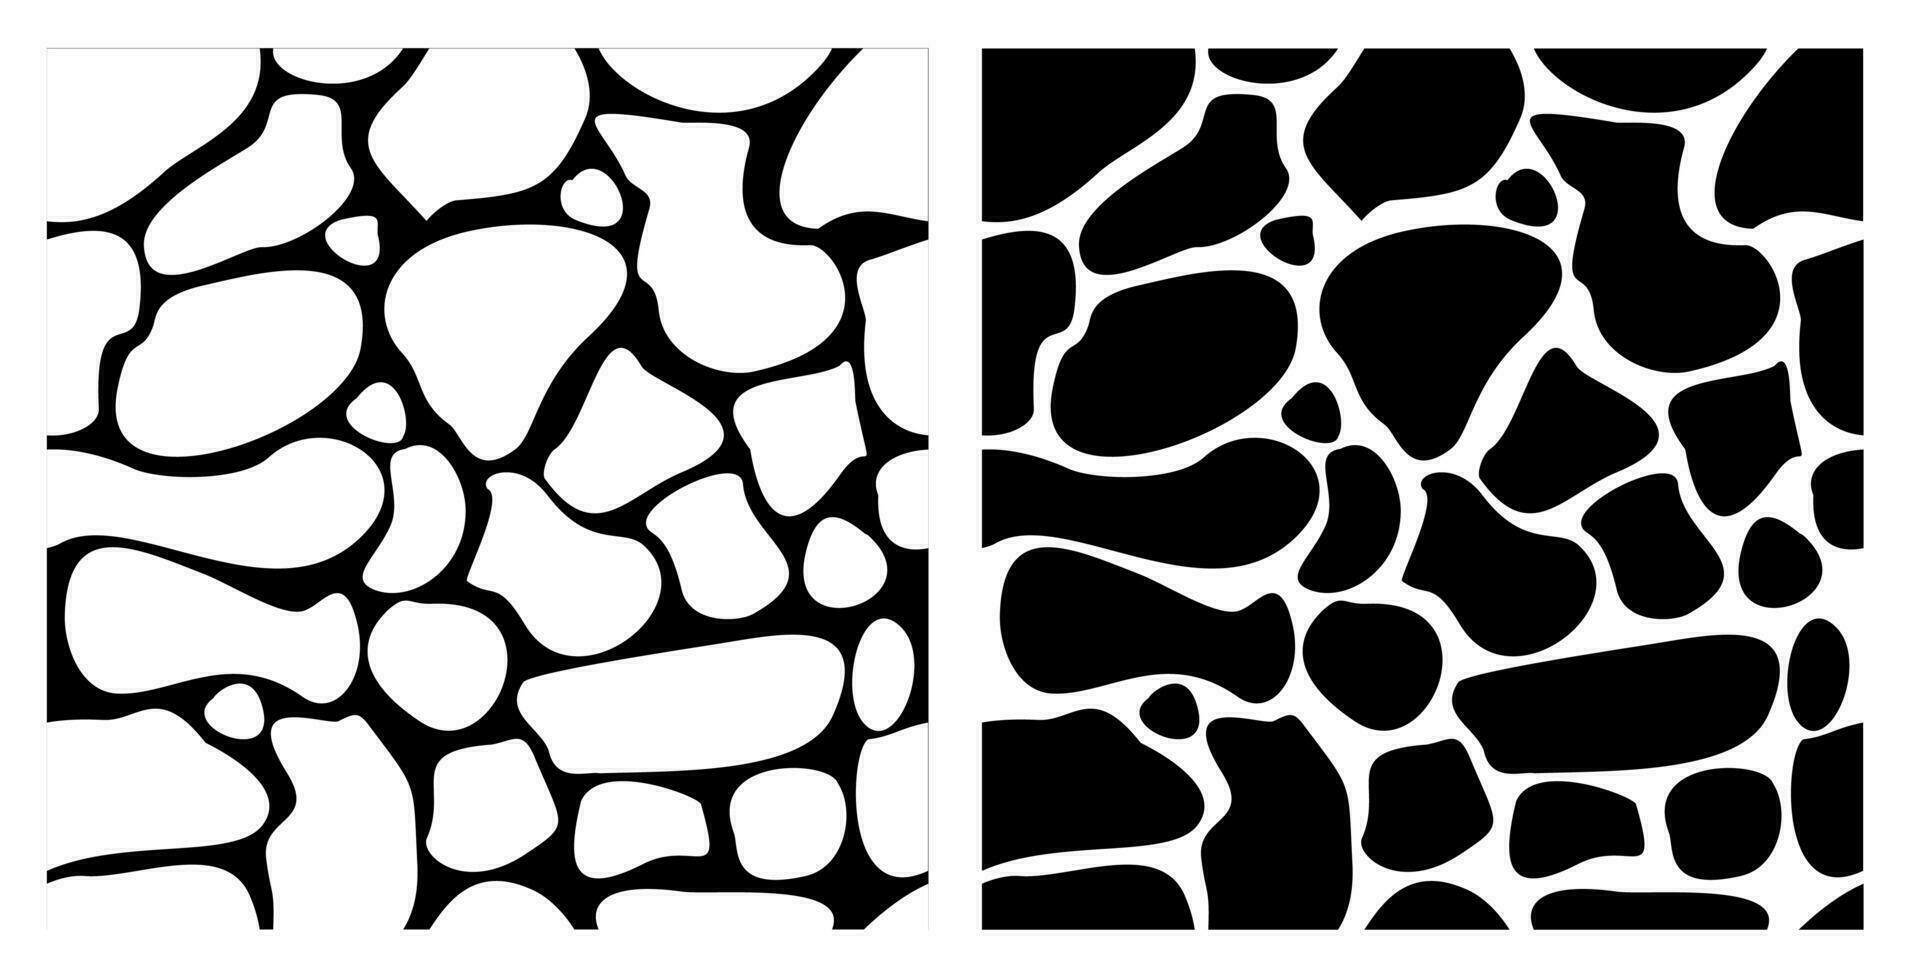 abstrakt nahtlos schwarz und Weiß Gekritzel Muster mit Flecken. endlos Vektor Hintergrund zum Stoff, Hintergrund, Verpackung Papier, Kleidung. Kontrast Pflanze Vorlage, kreativ Grafik.